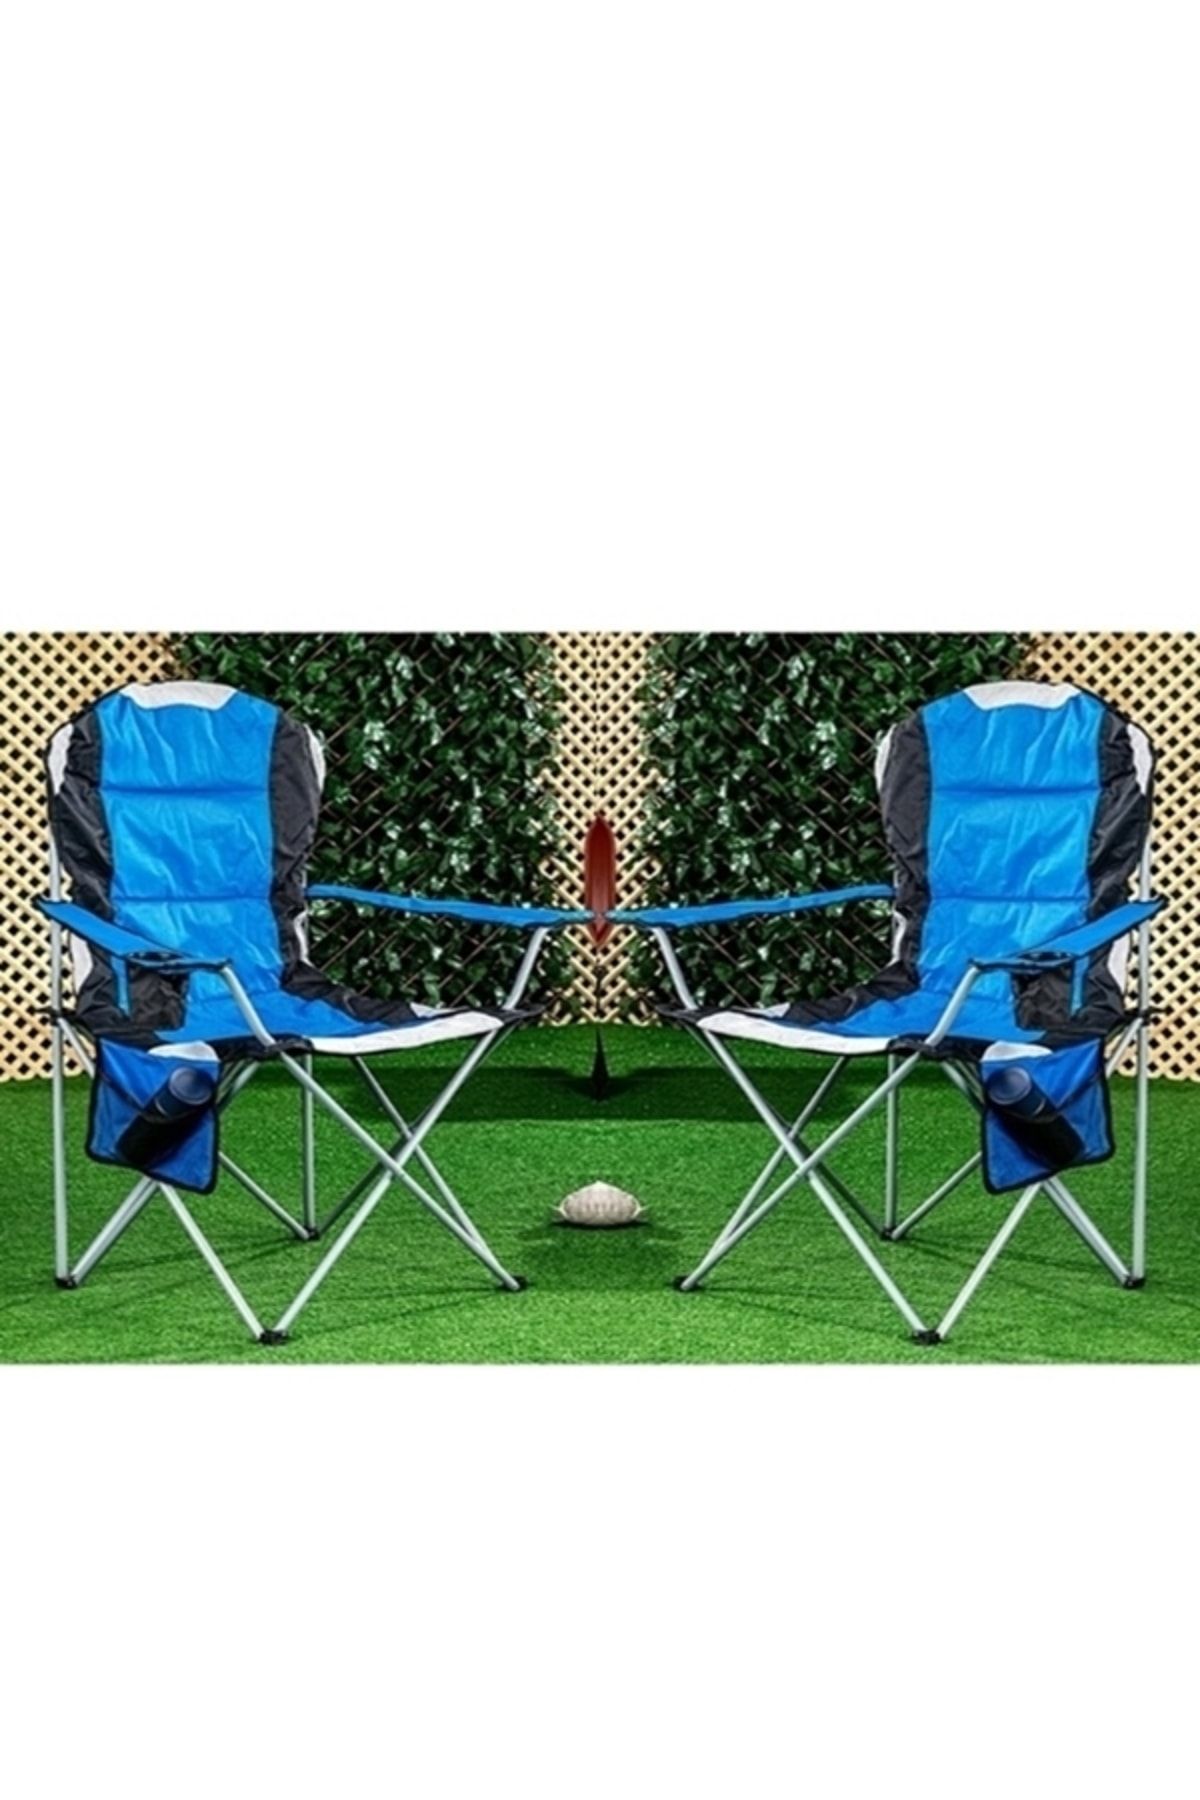 gaman Katlanabilir Kamp Sandalyesi Plaj Sandalyesi Ultra Ergonomik Tasarım Taşınabilir Piknik Kamp Koltuğu